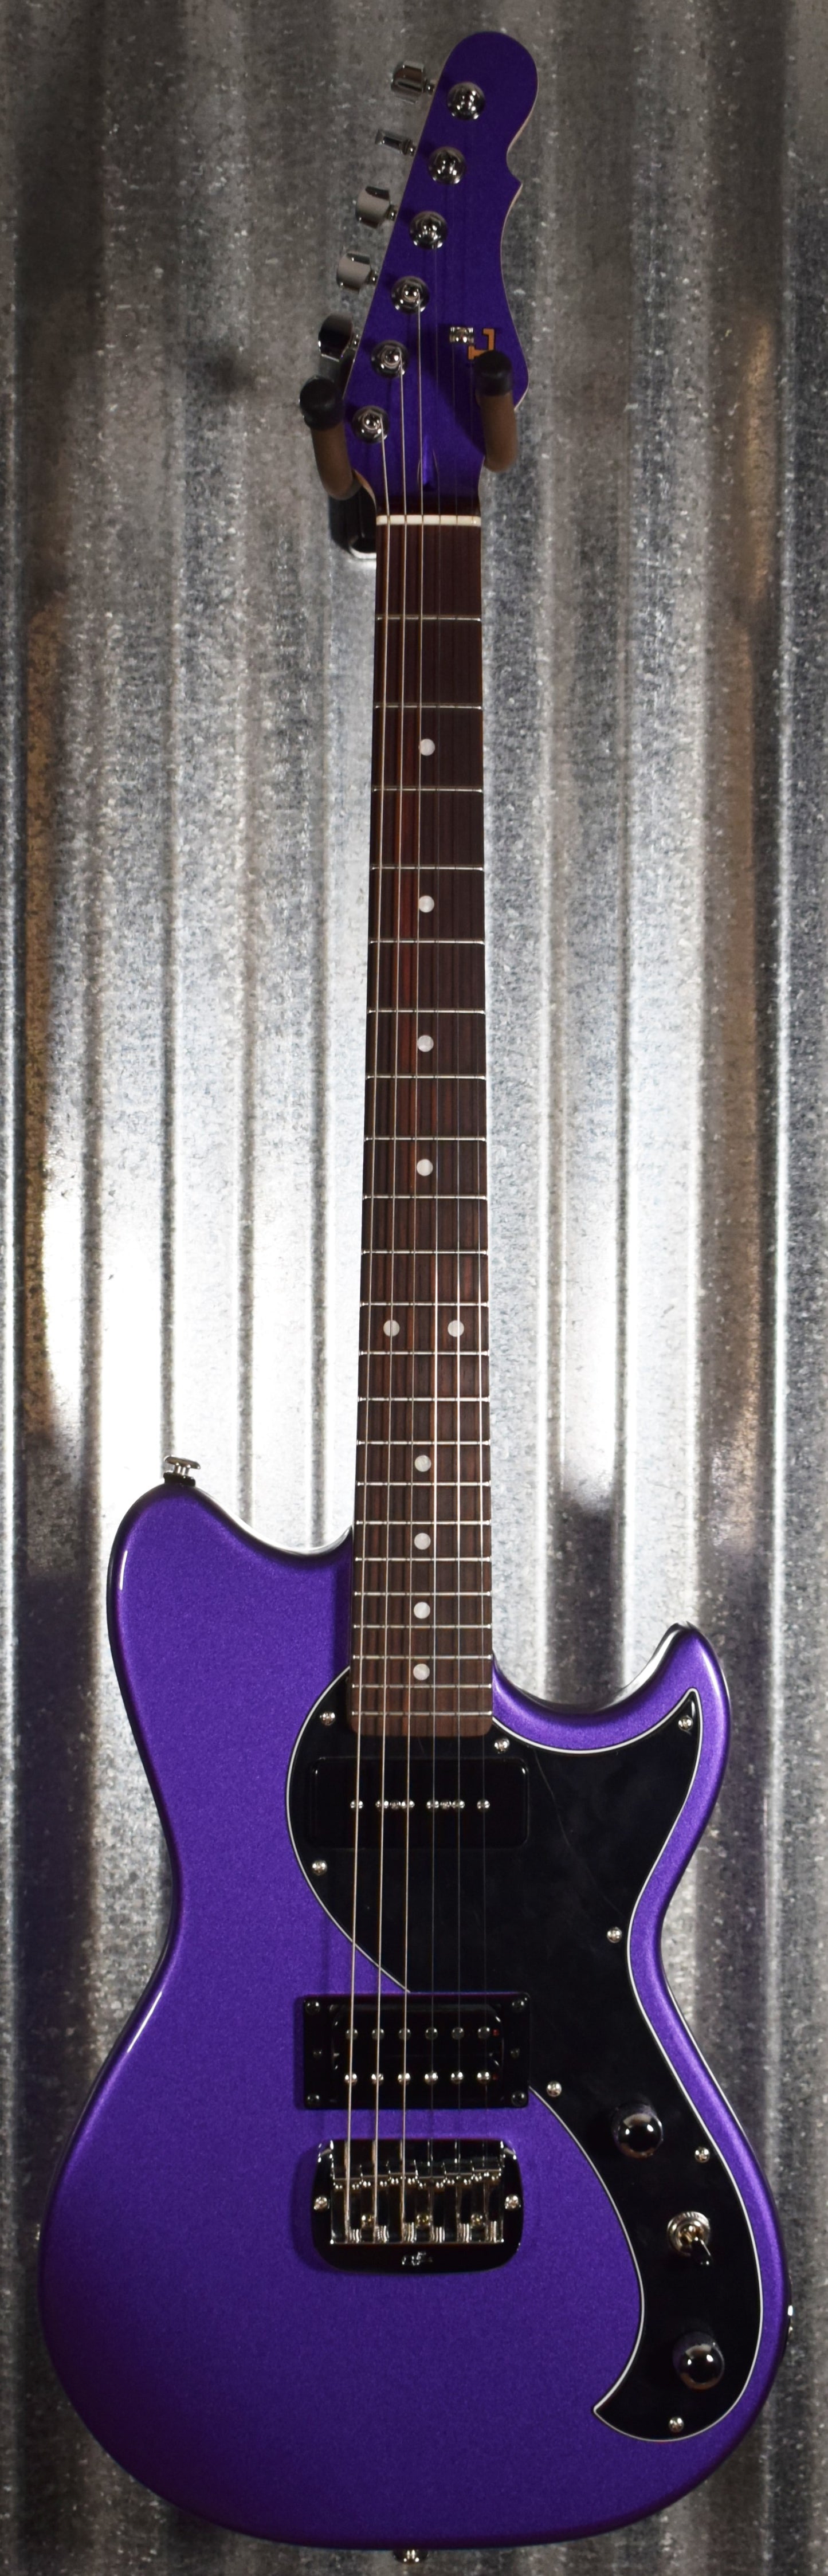 G&L USA Fallout Plum Crazy Rosewood Satin Neck Guitar & Case #6173